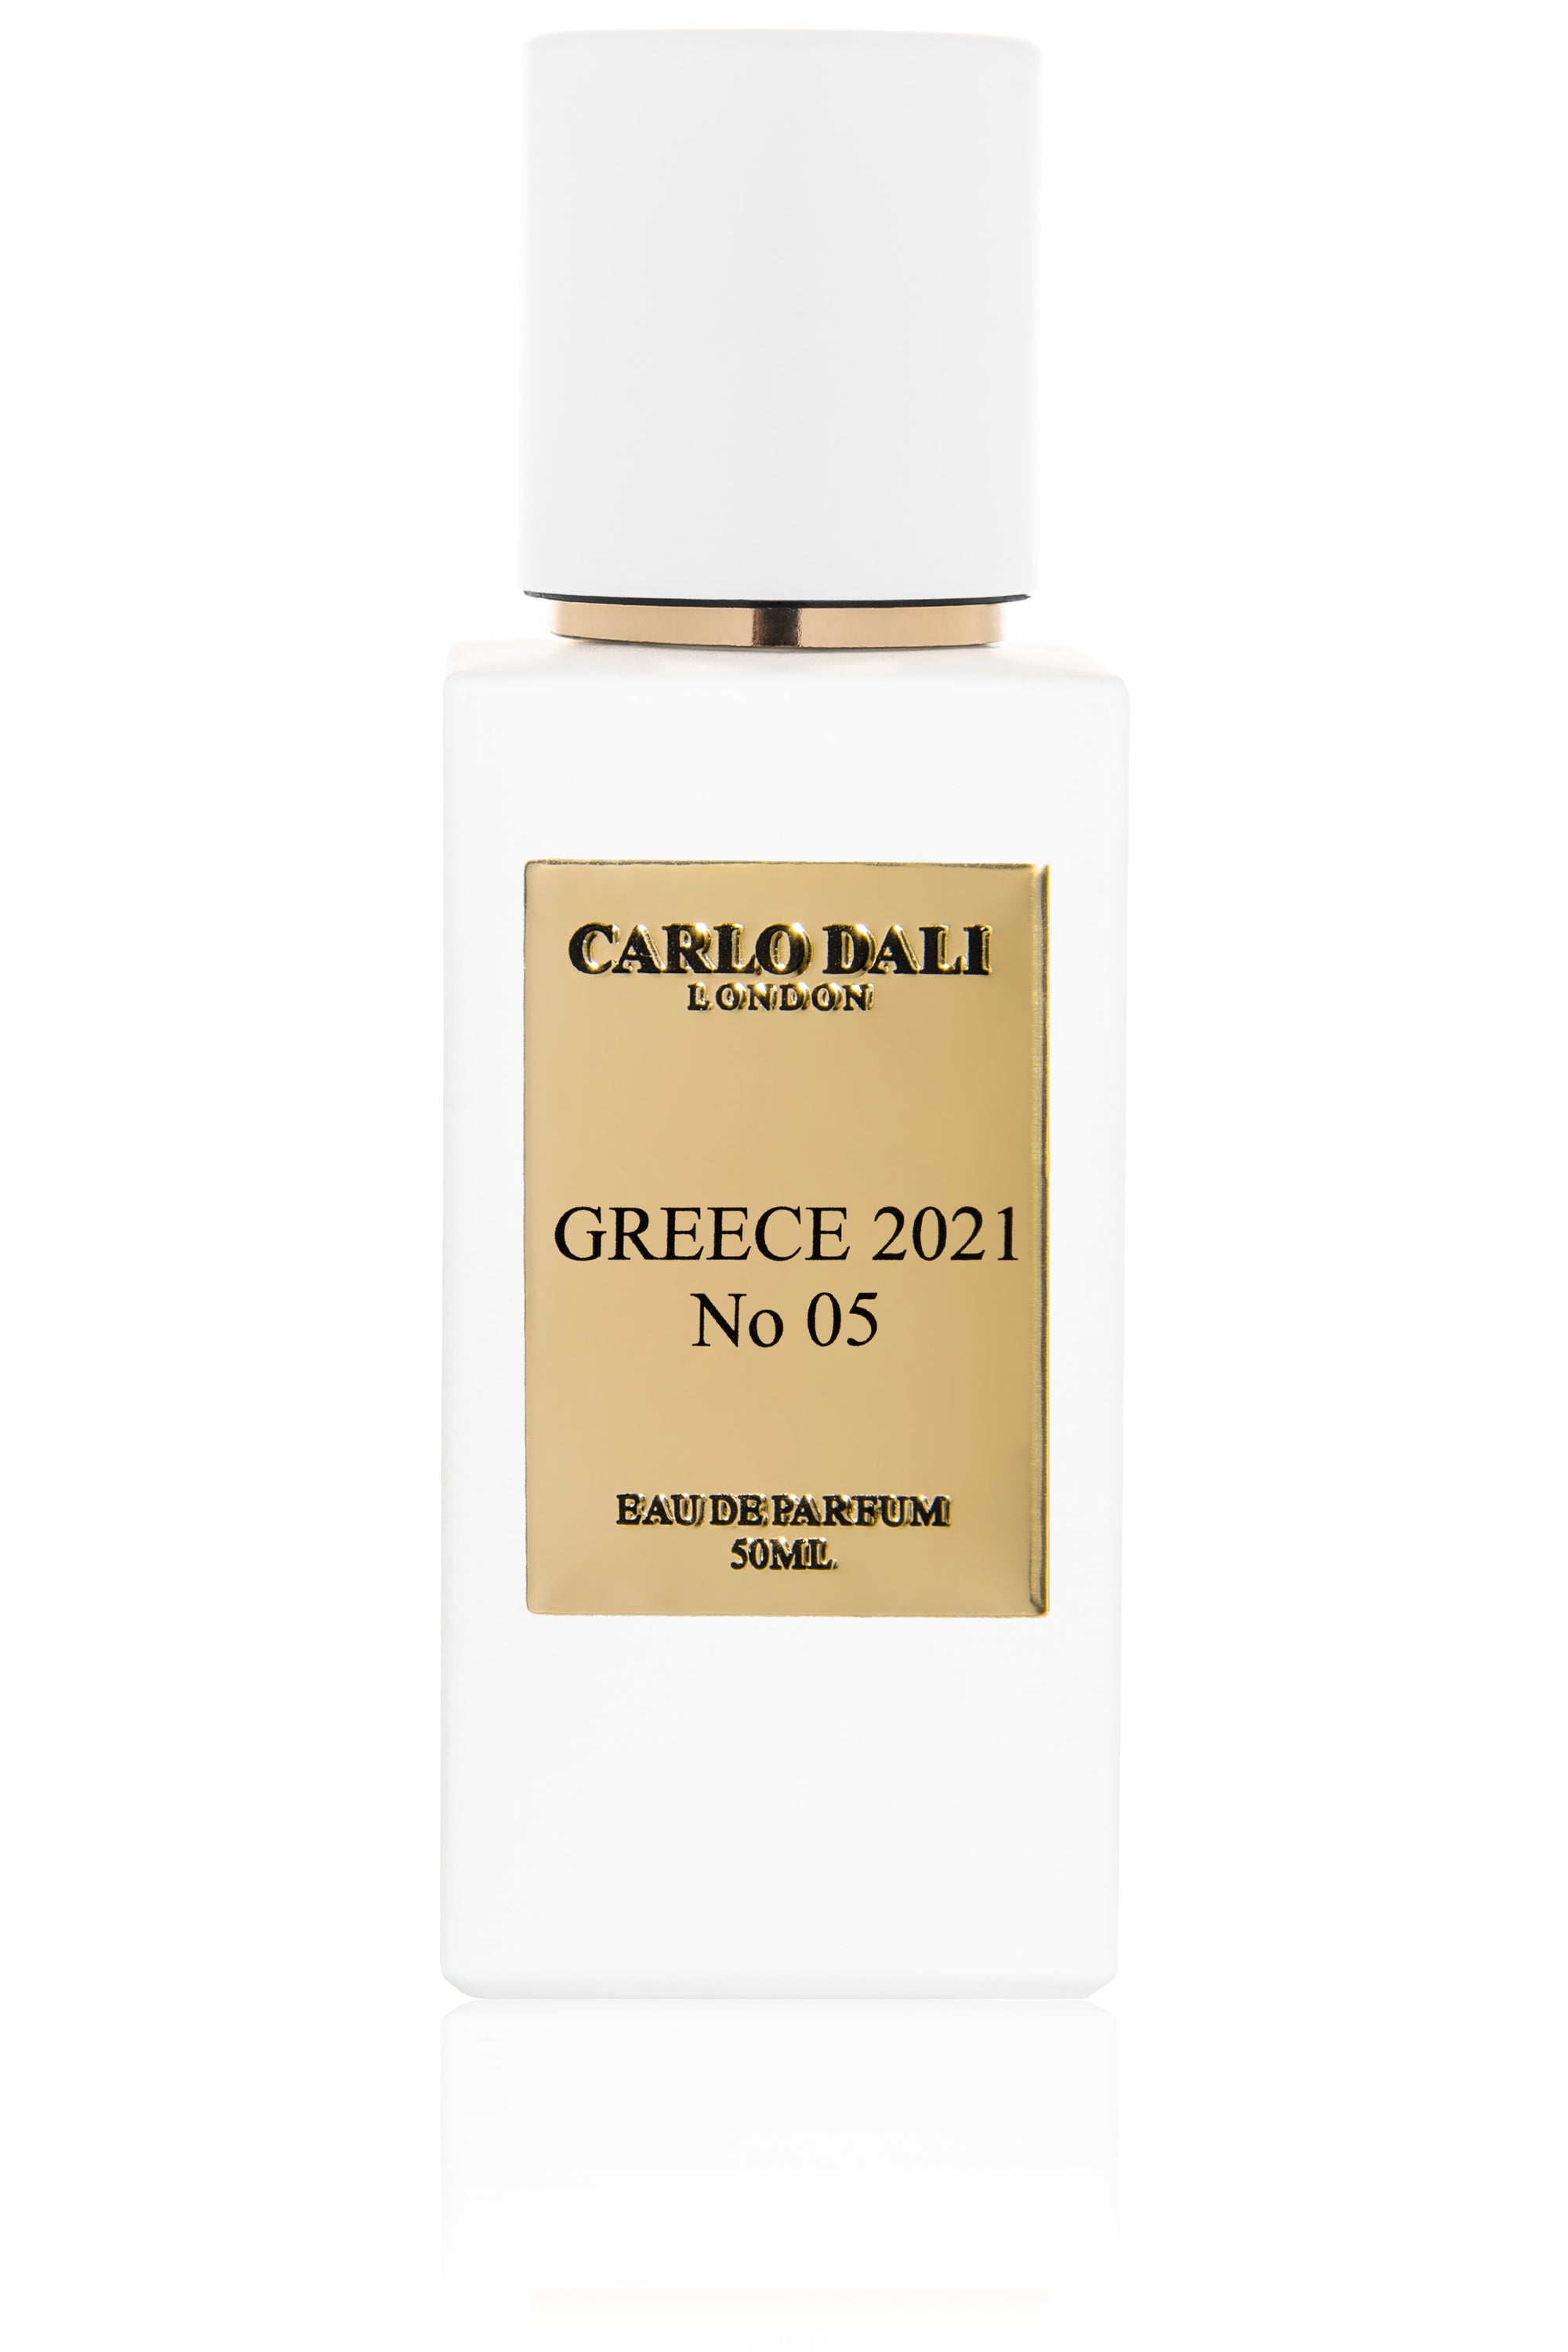 GREECE 2021 No 05